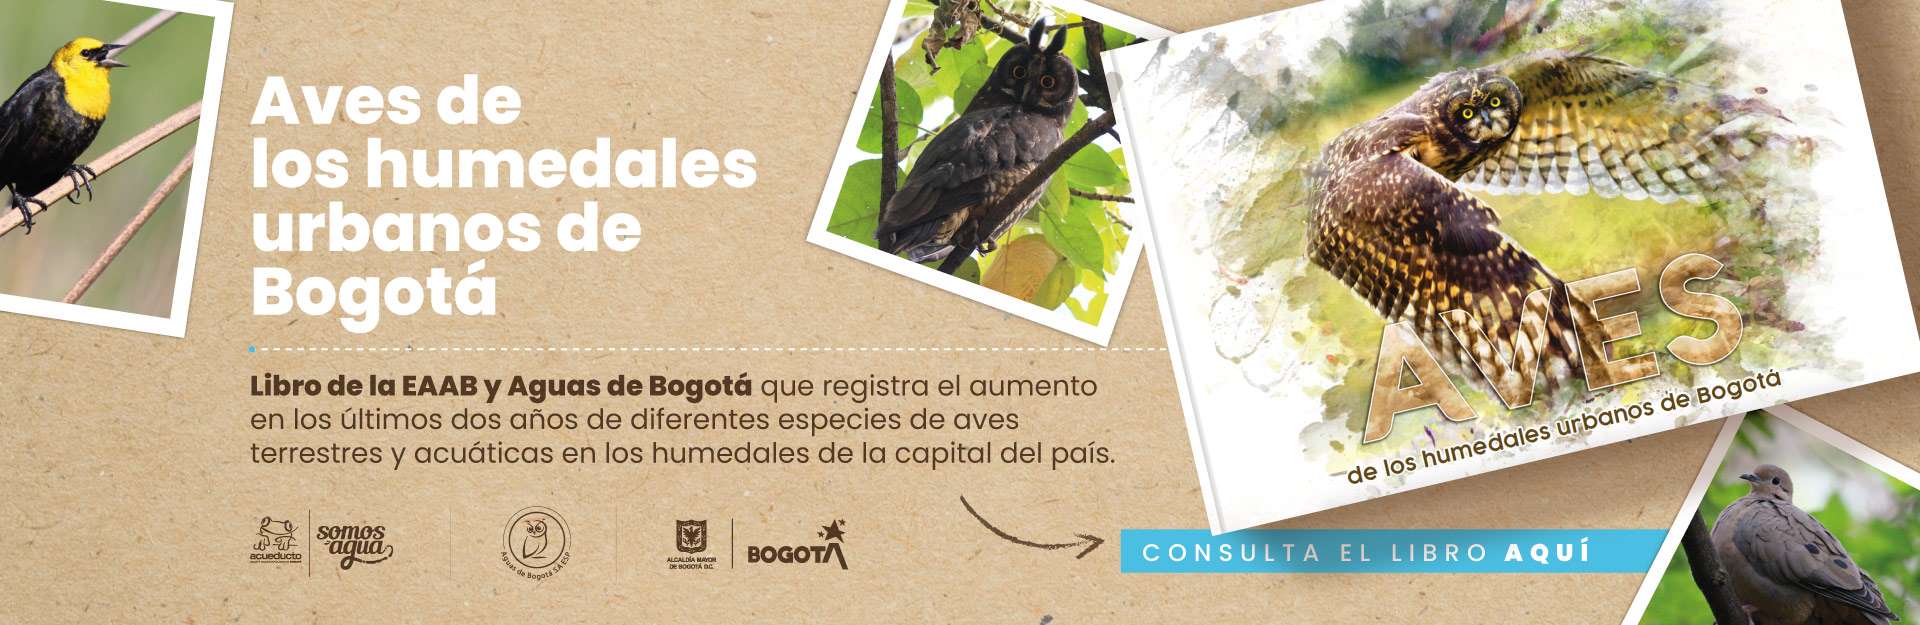 Aves de los humedales urbanos de Bogotá